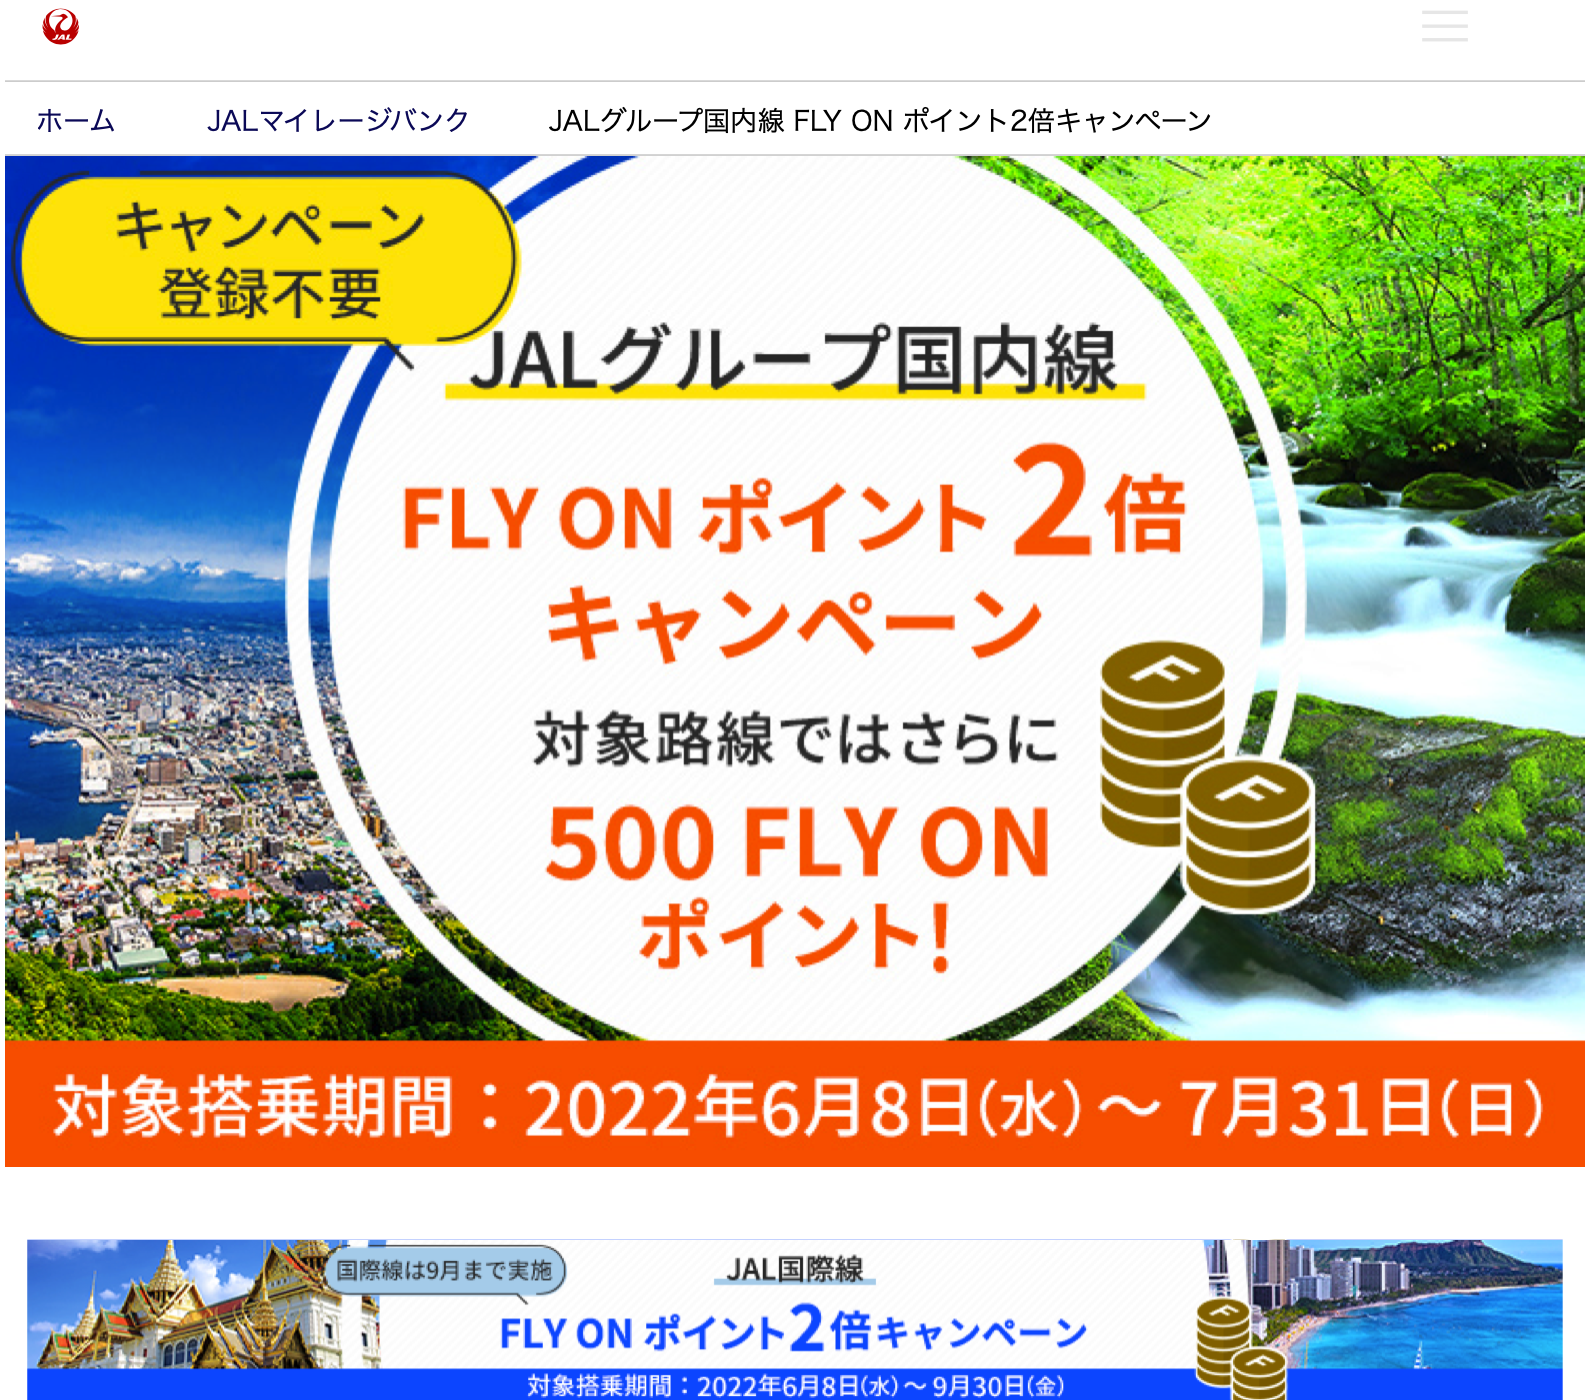 JALグループ国内線 FLY ON ポイント2倍キャンペーン